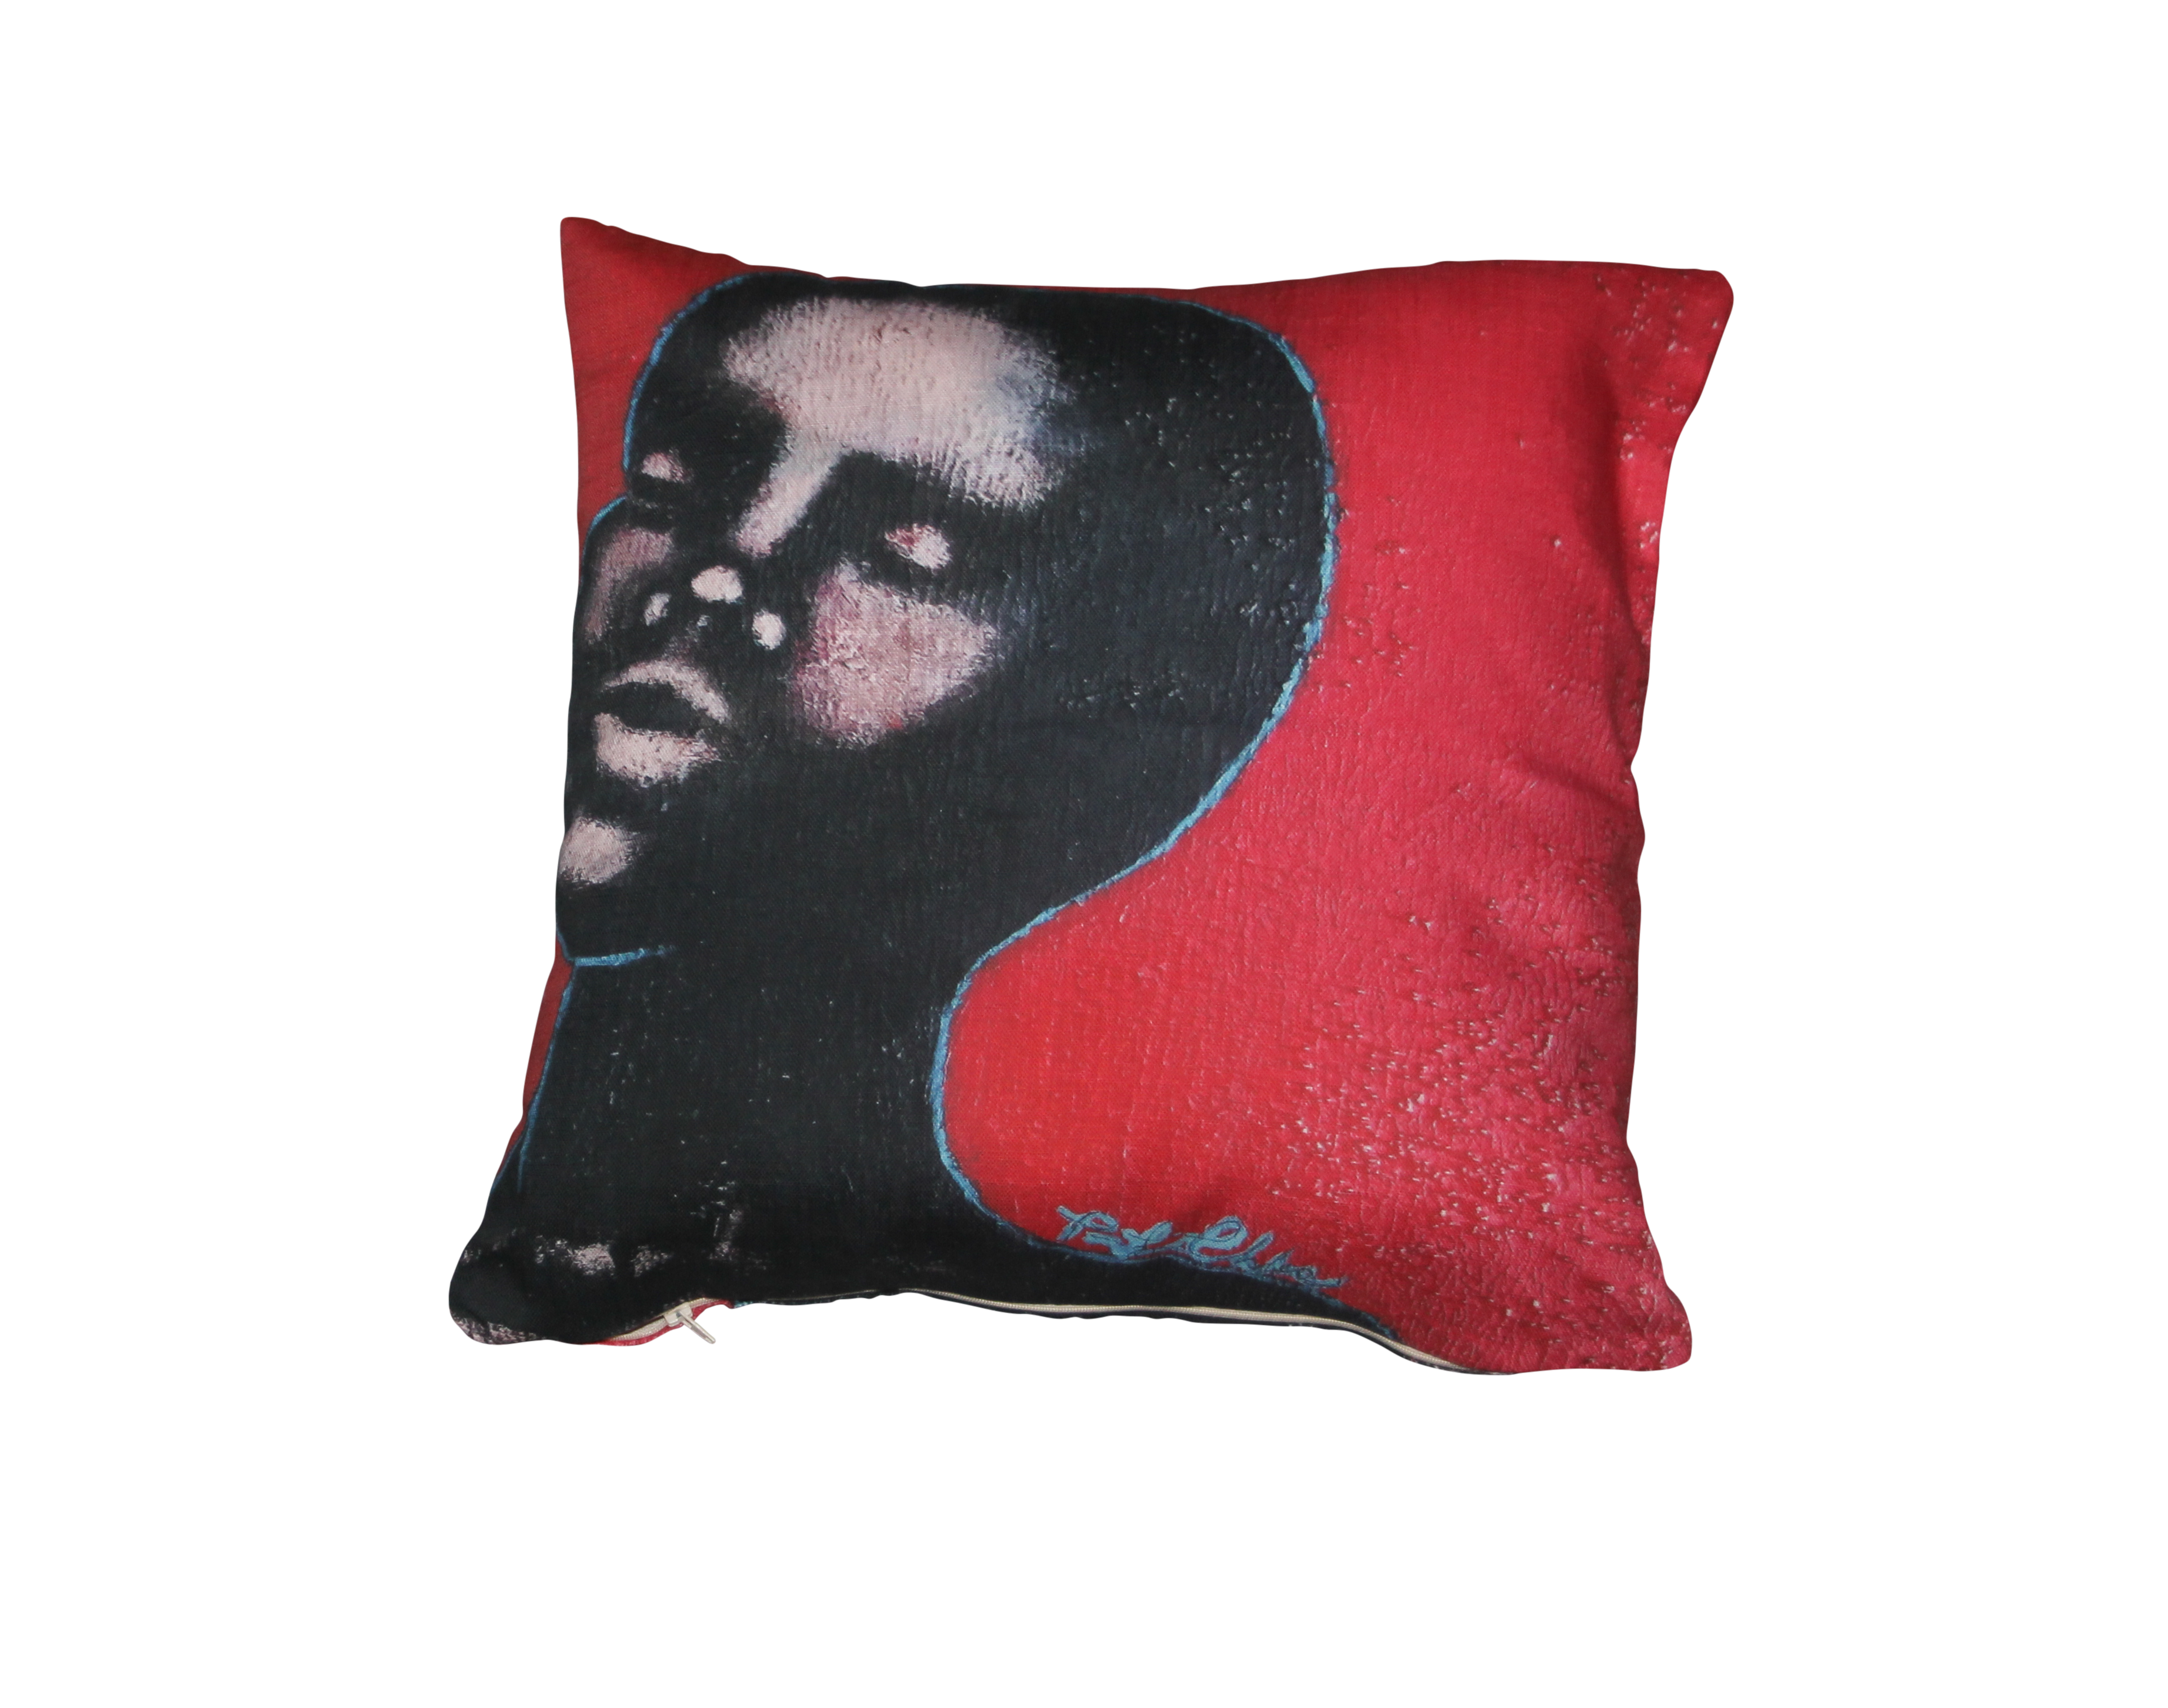 "Noir" Art Cushion by Tarra Louis-Charles